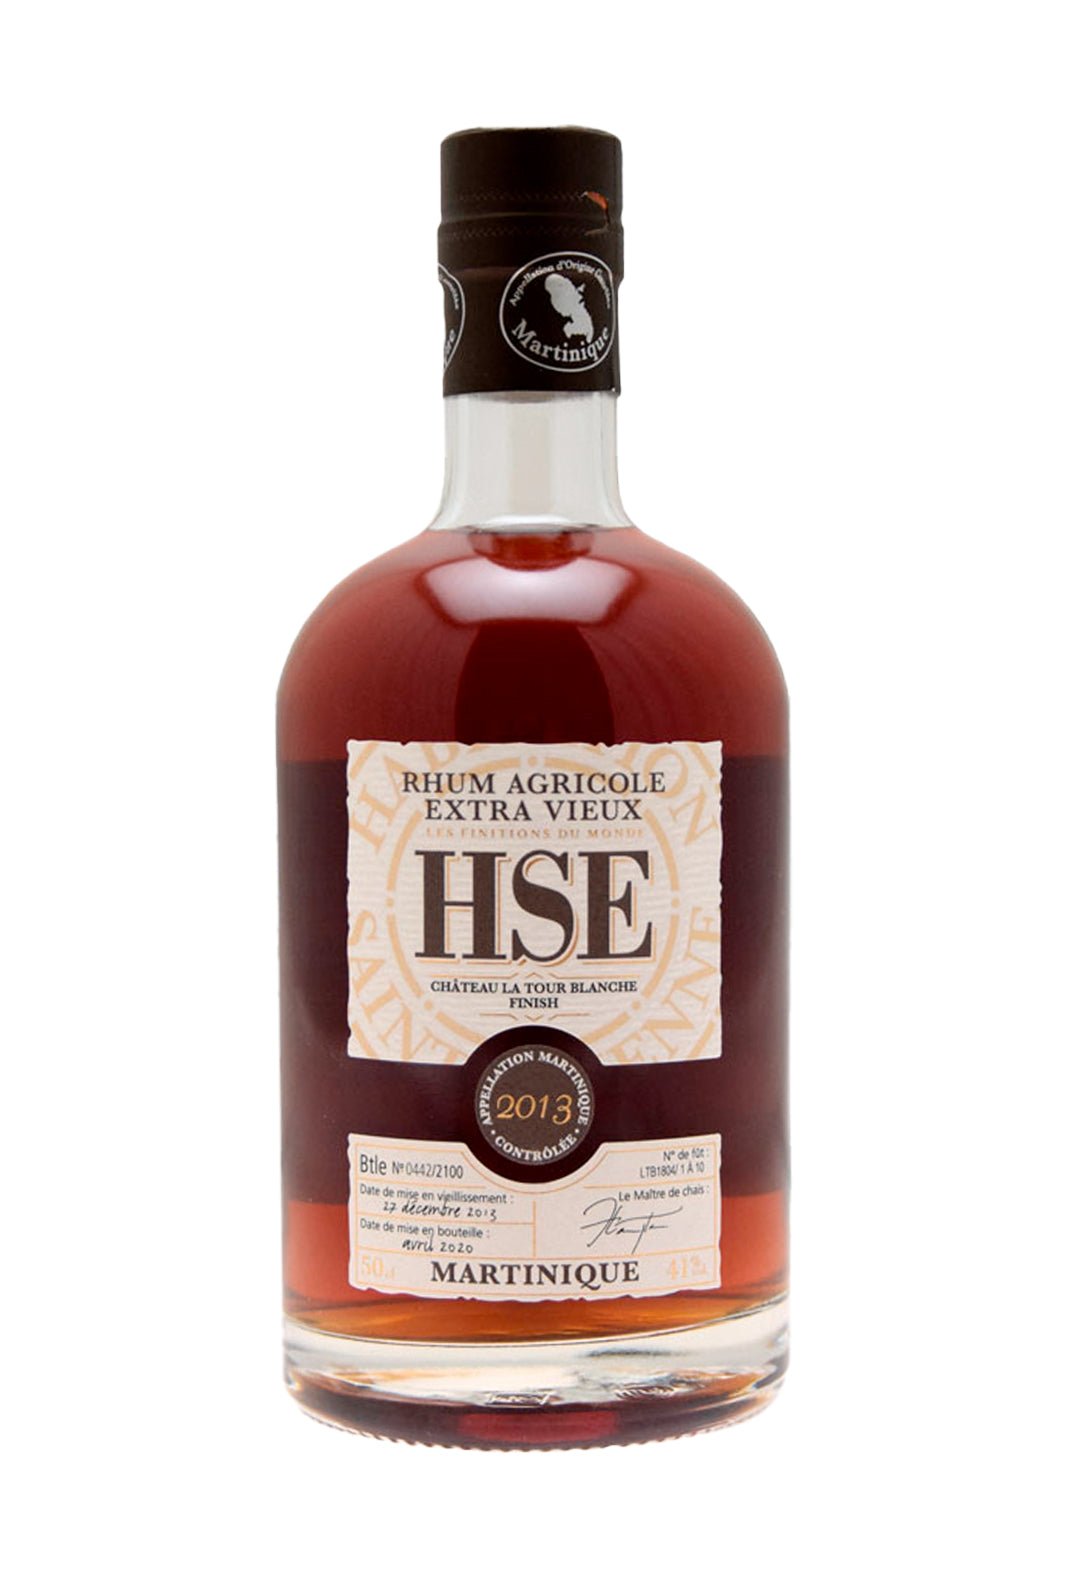 Habitation St Etienne Rum Agricole Vieux 2013 Sauternes cask 41% 500ml | Rum | Shop online at Spirits of France